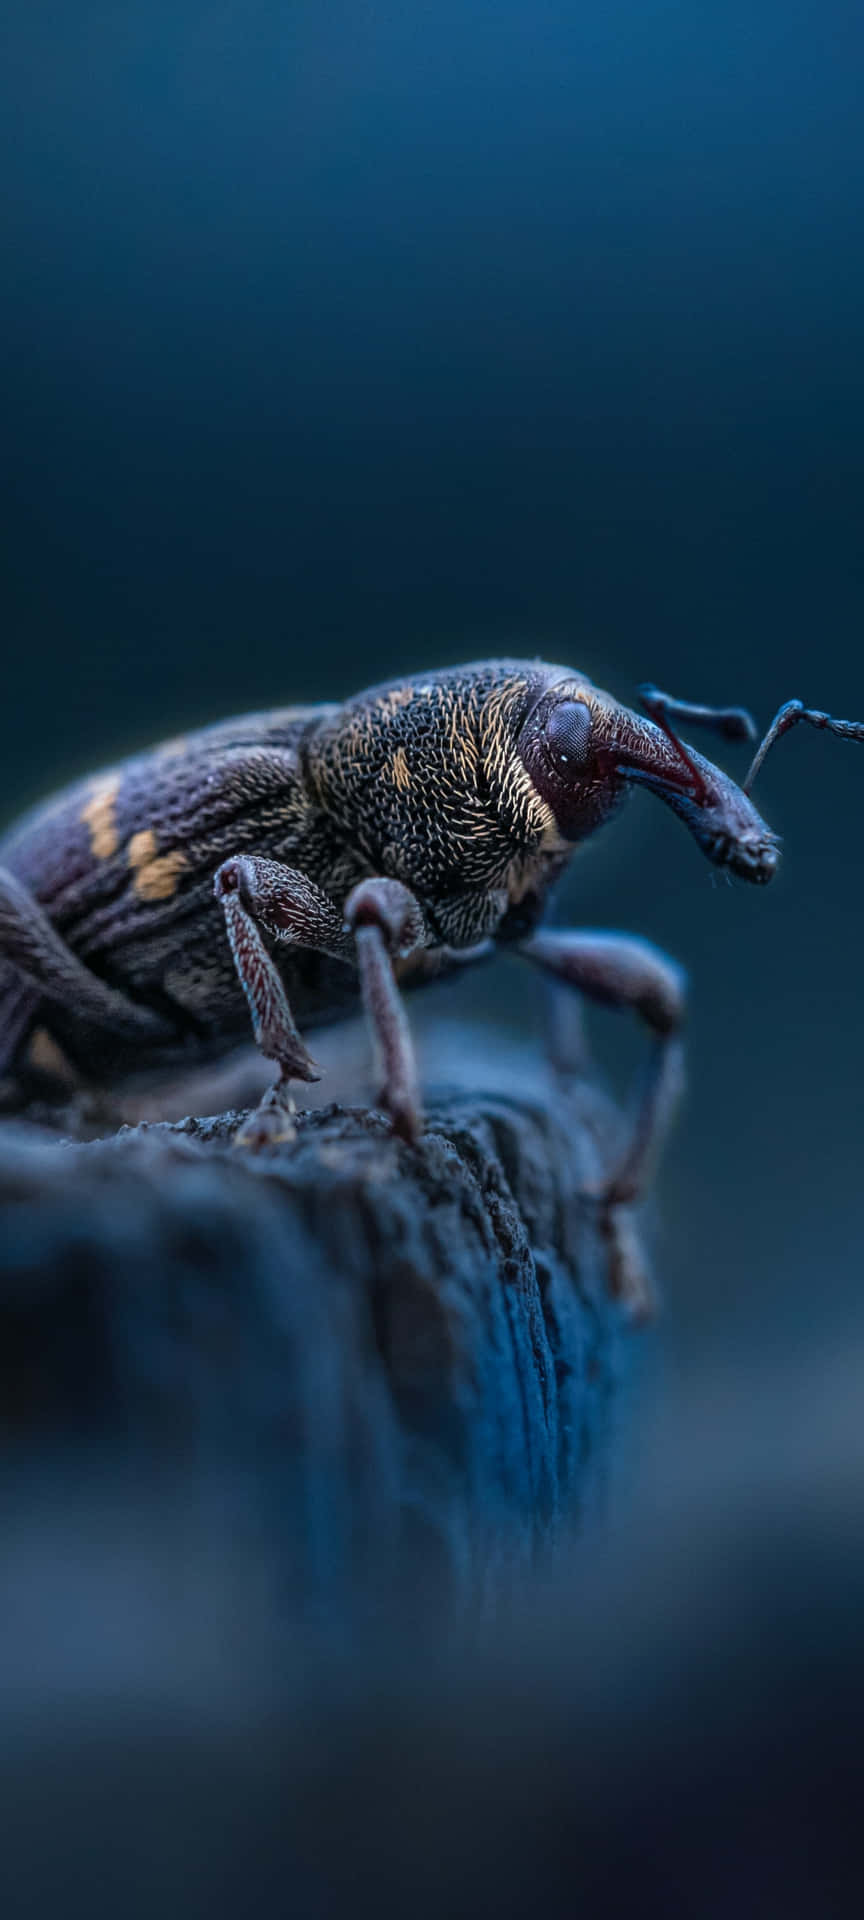 Close Up Weevil In Natural Habitat Wallpaper